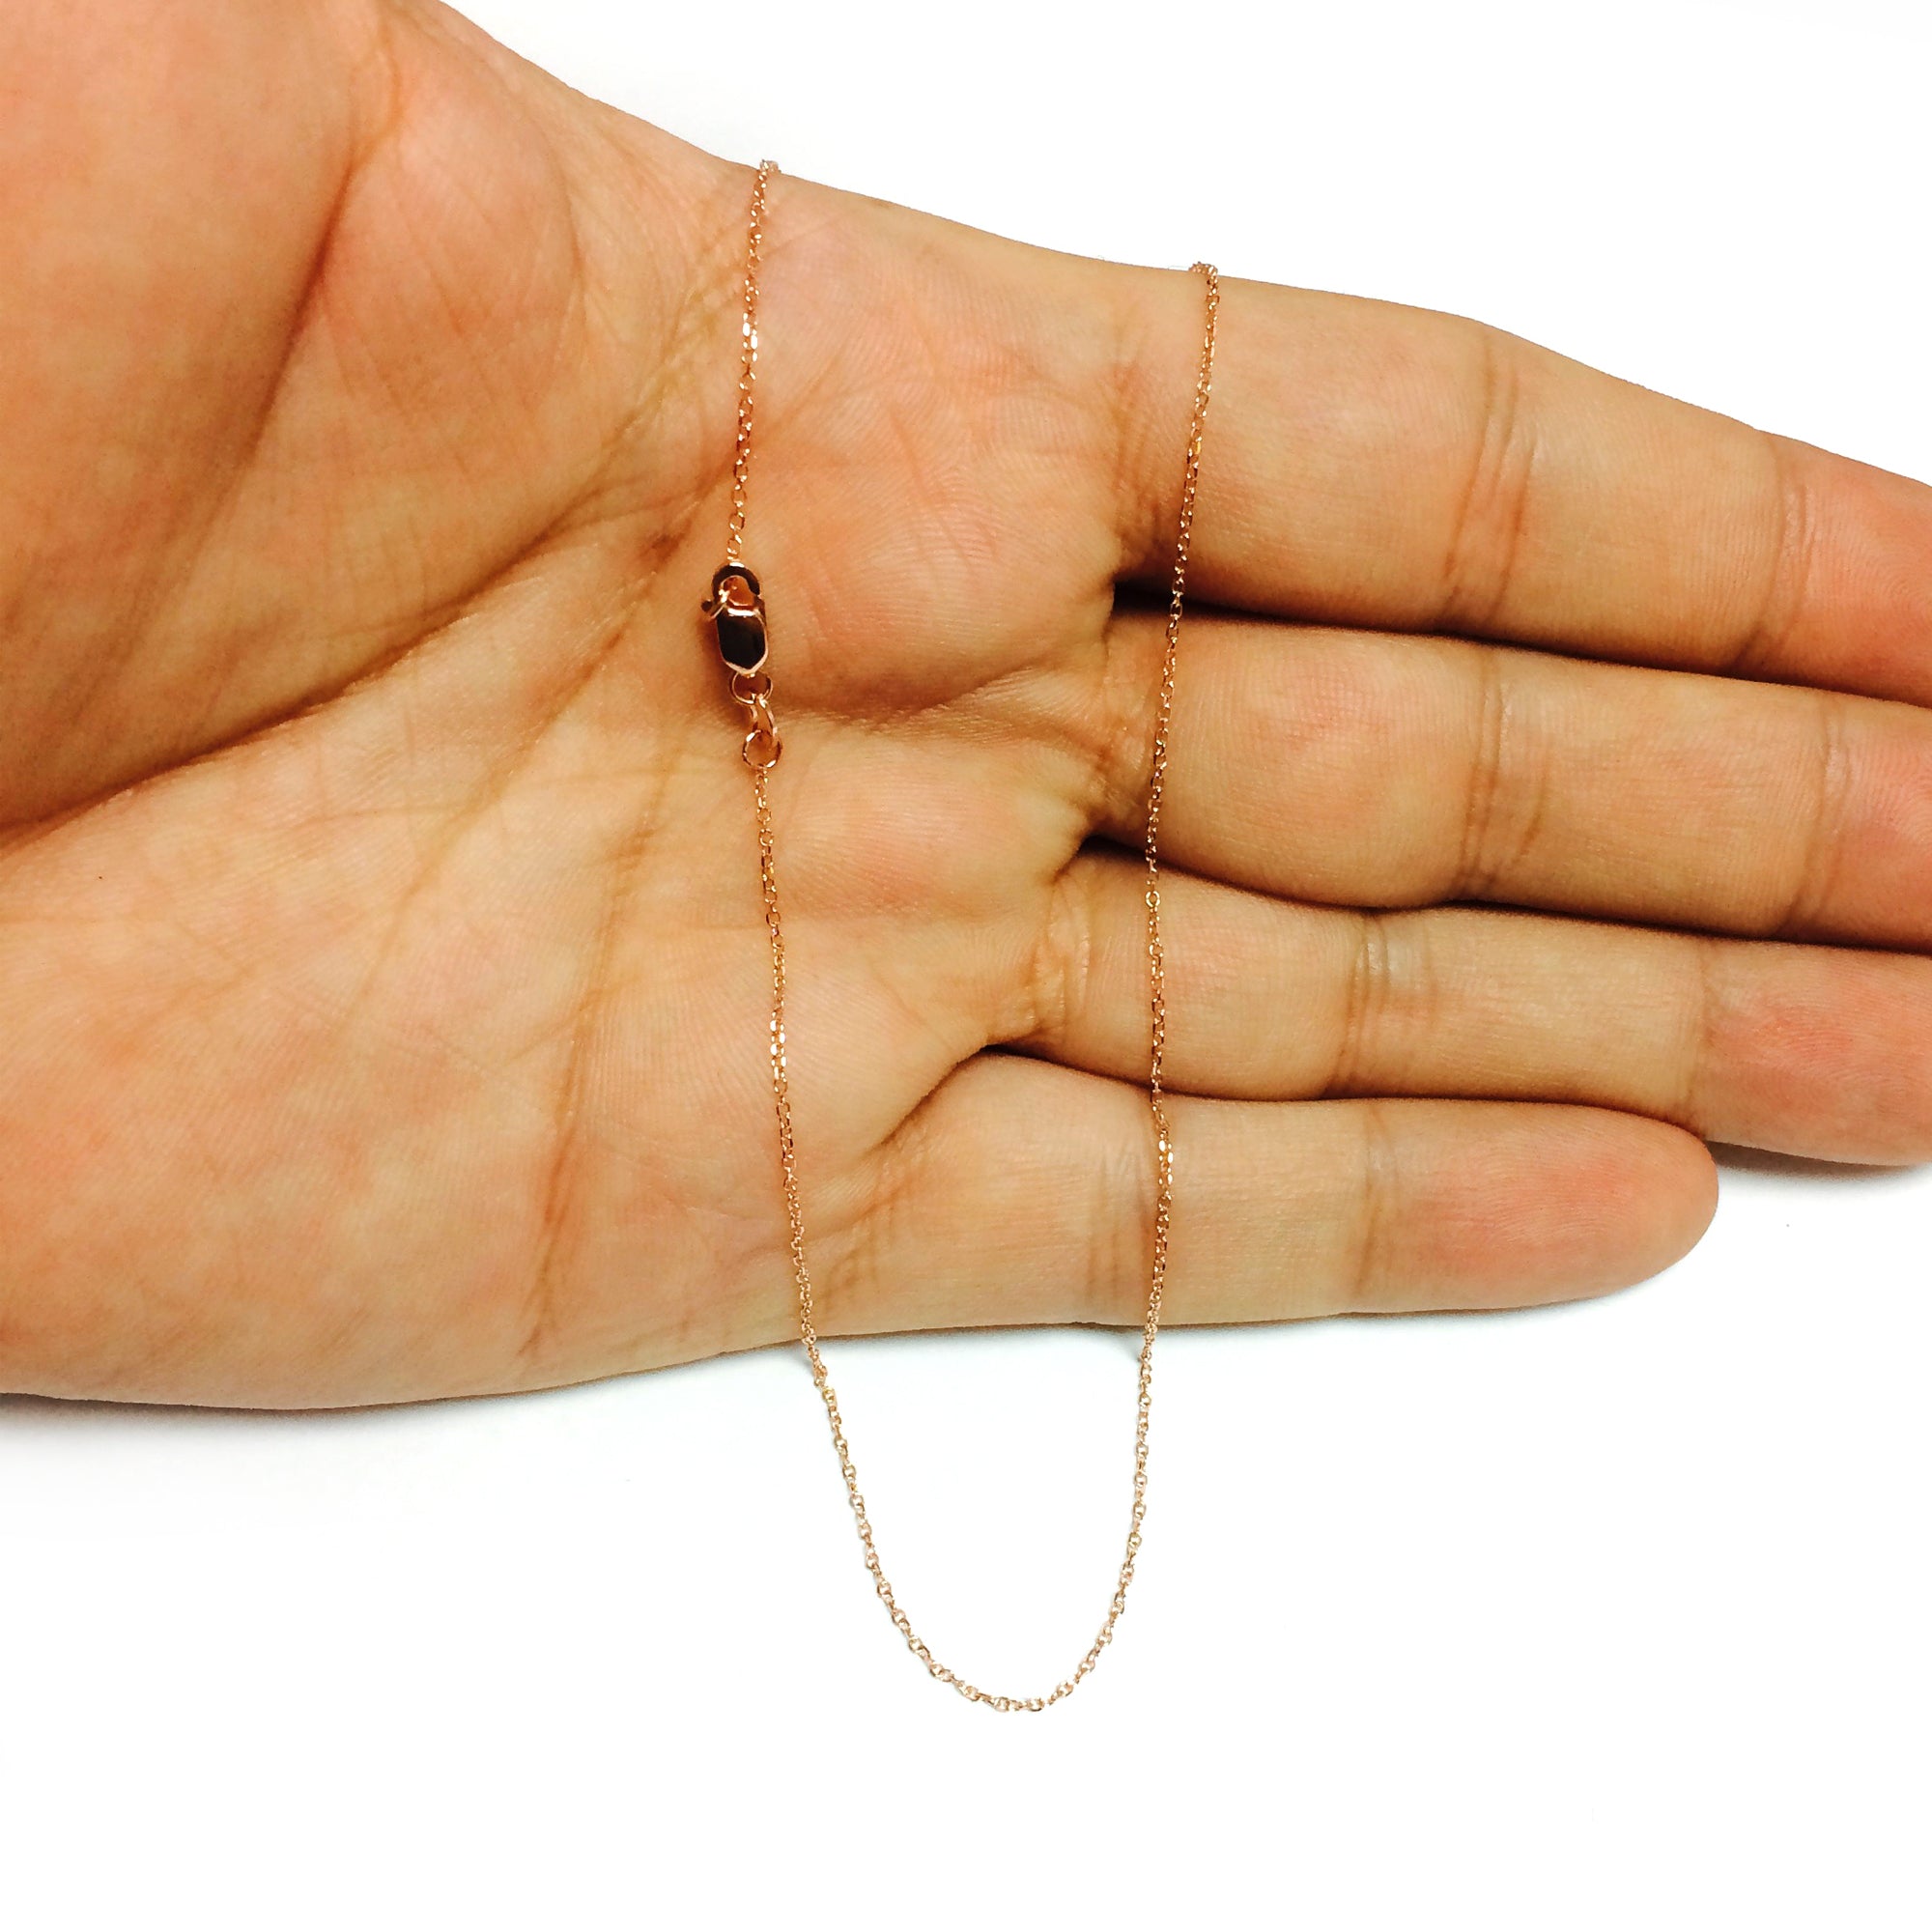 14 k roseguld kabelkædekæde, 0,8 mm fine designersmykker til mænd og kvinder